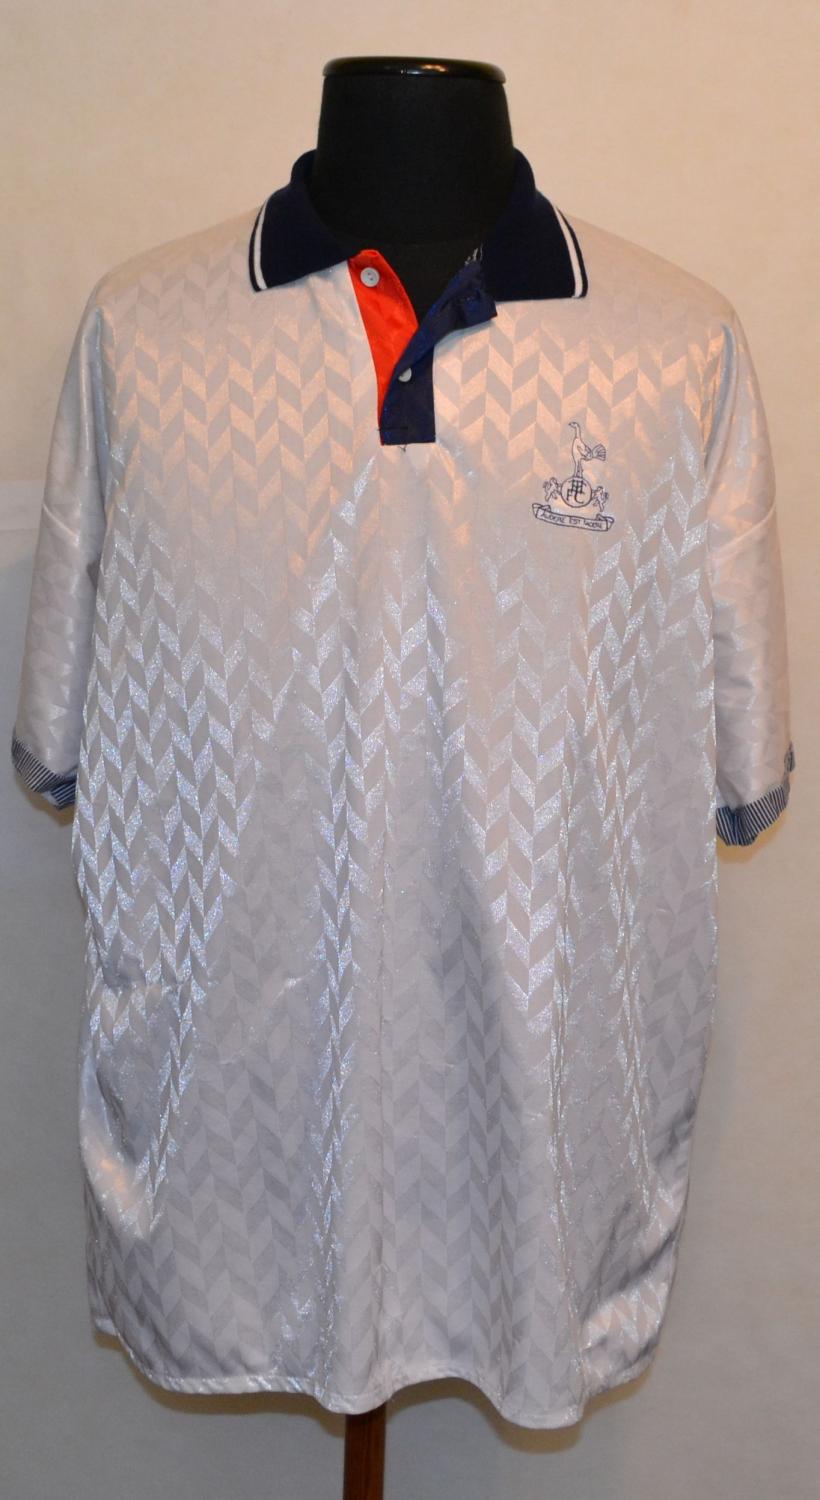 maglia di tottenham hotspur 1985 speciale personalizza